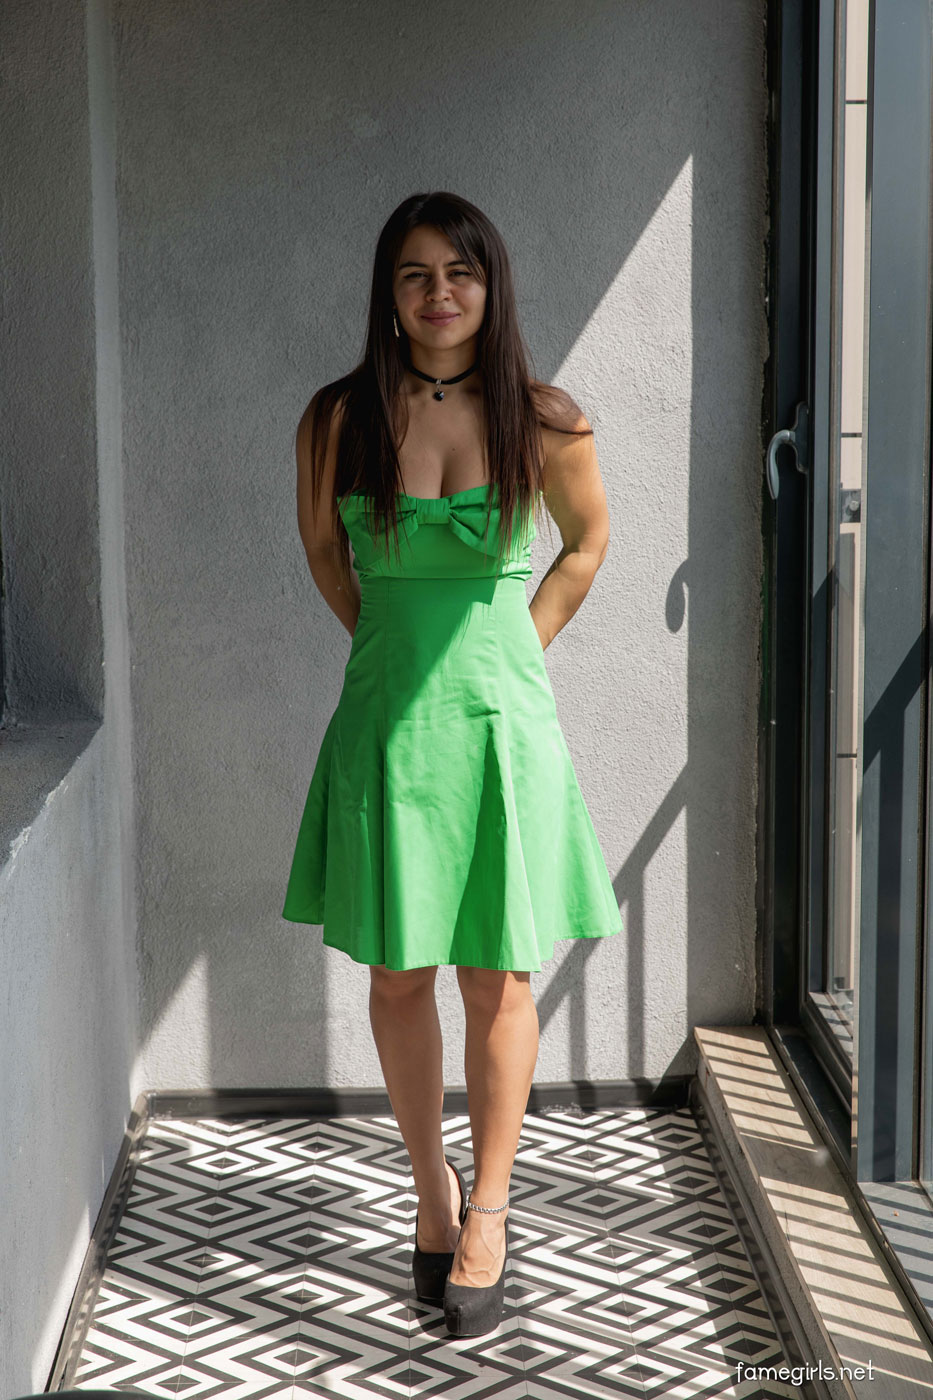 Vita in a Green Dress